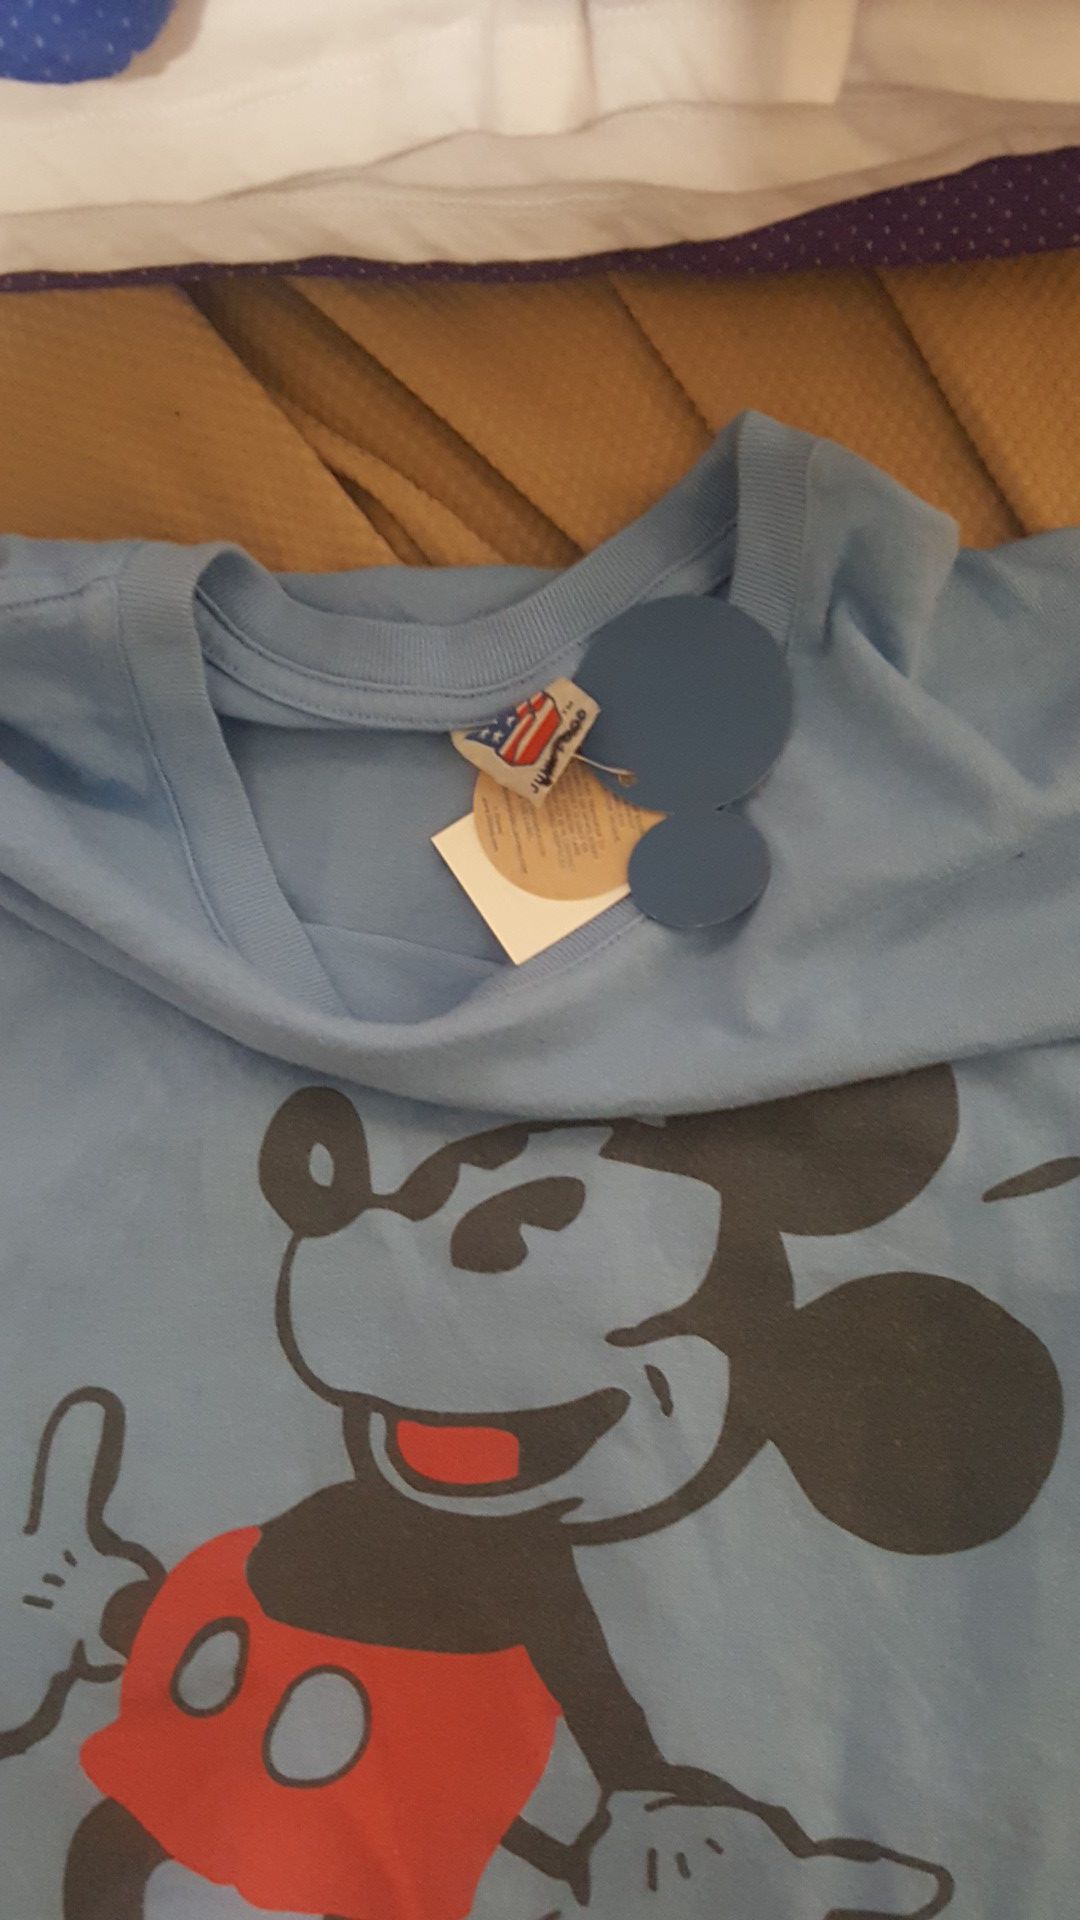 Blusas de Mickey mouse for Sale in Rancho Cordova, CA - OfferUp